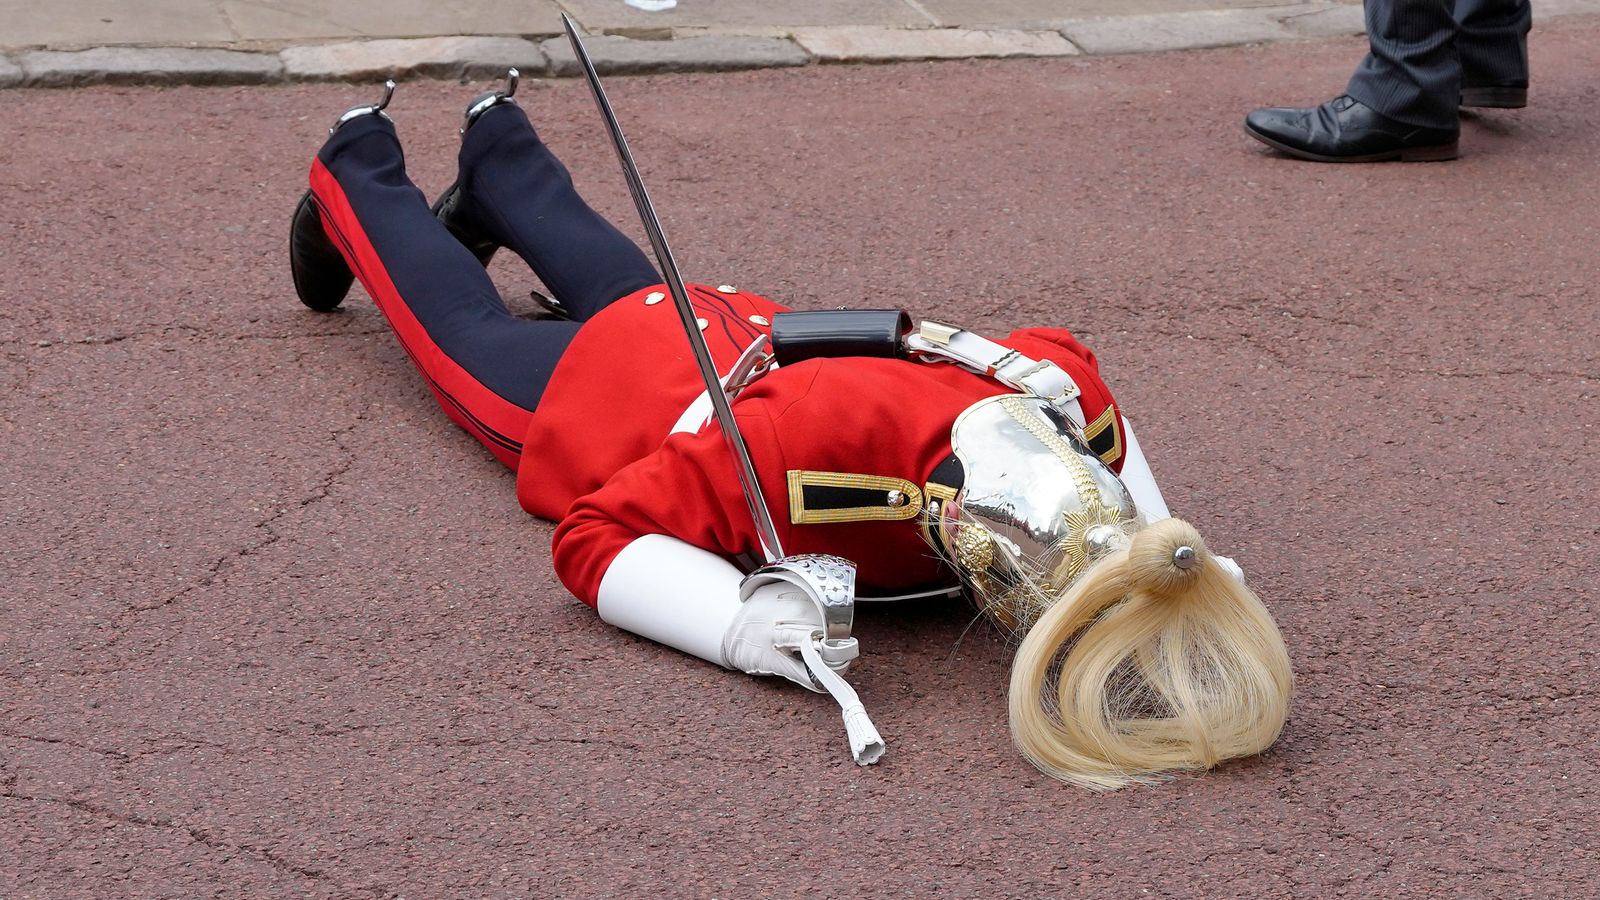 تساعد الشرطة جنديًا يغمى عليه في خدمة وسام الملك الأول  أخبار المملكة المتحدة